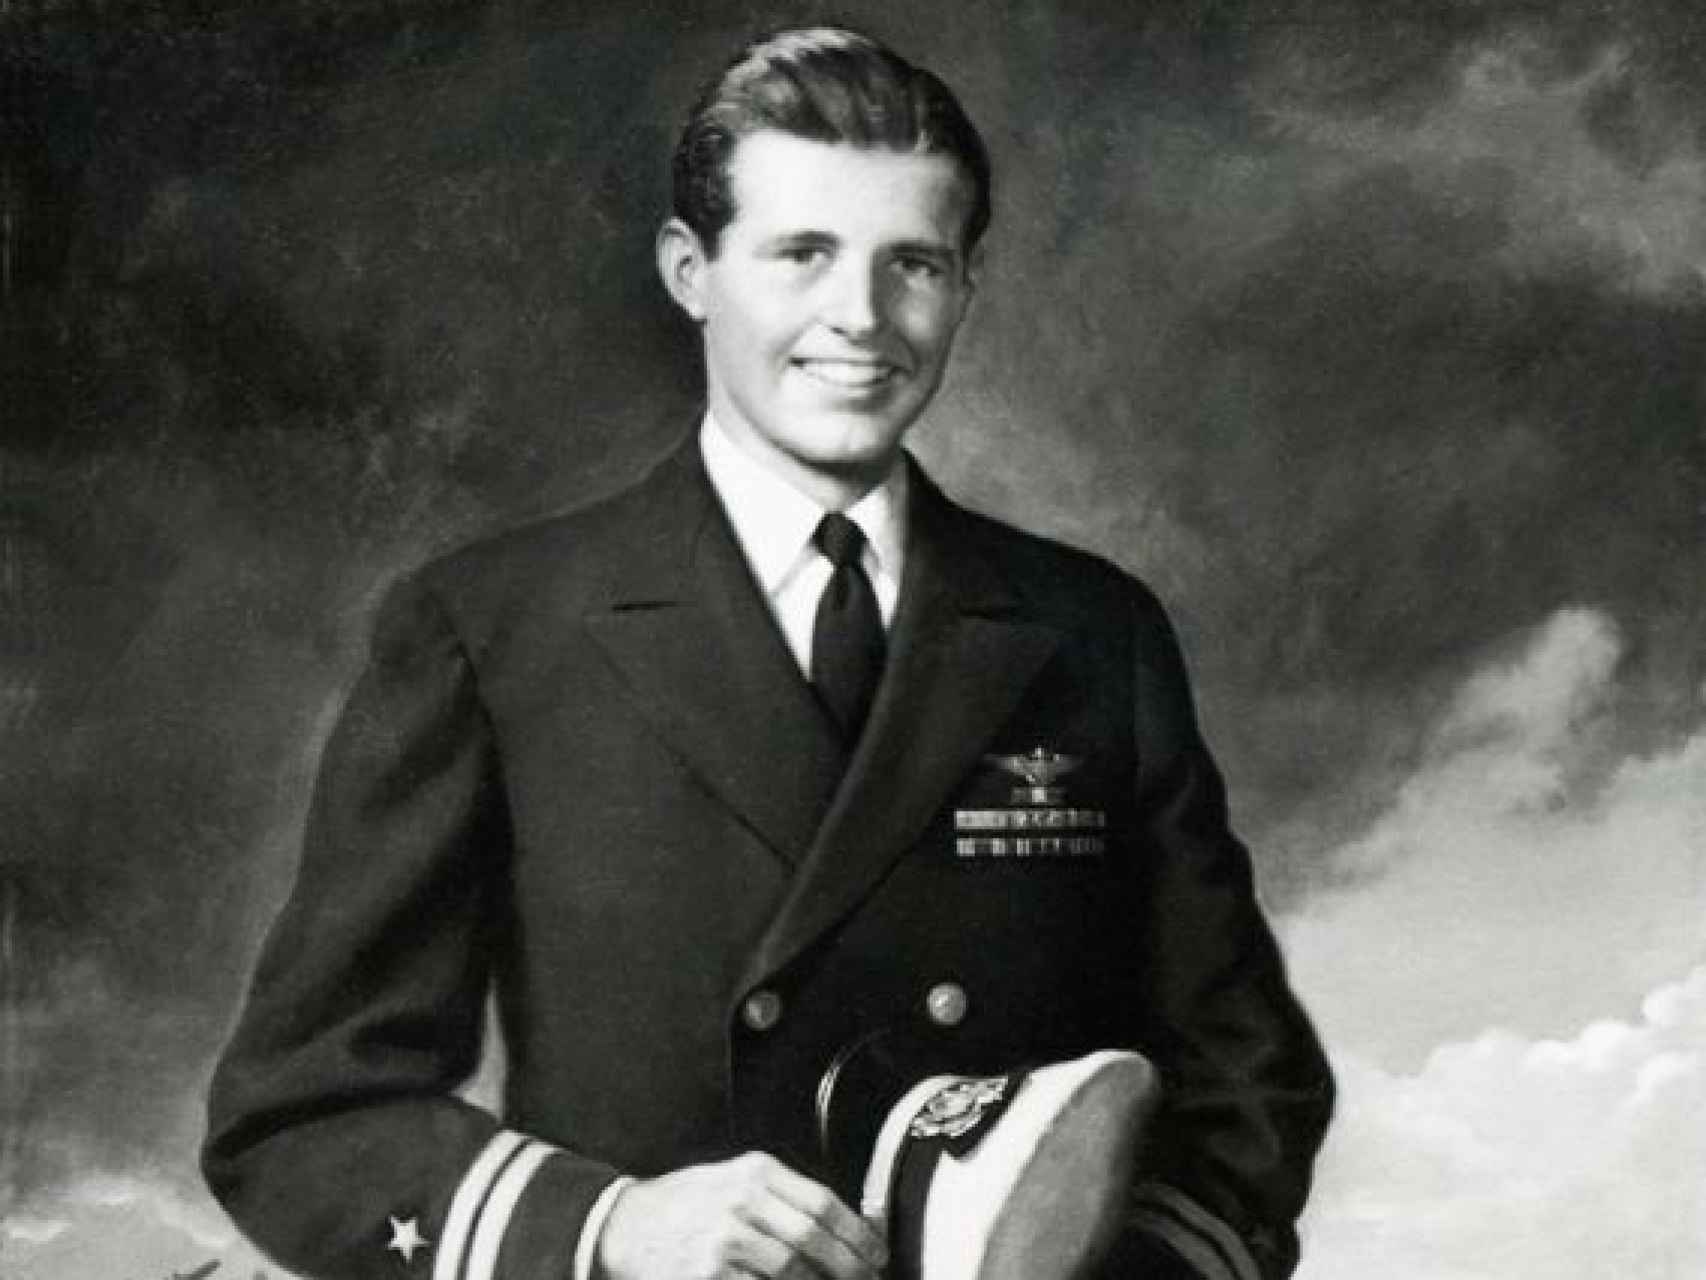 Joseph Patrick Kennedy era aviador naval y piloto de bombarderos con base en tierra en la Segunda Guerra Mundial.